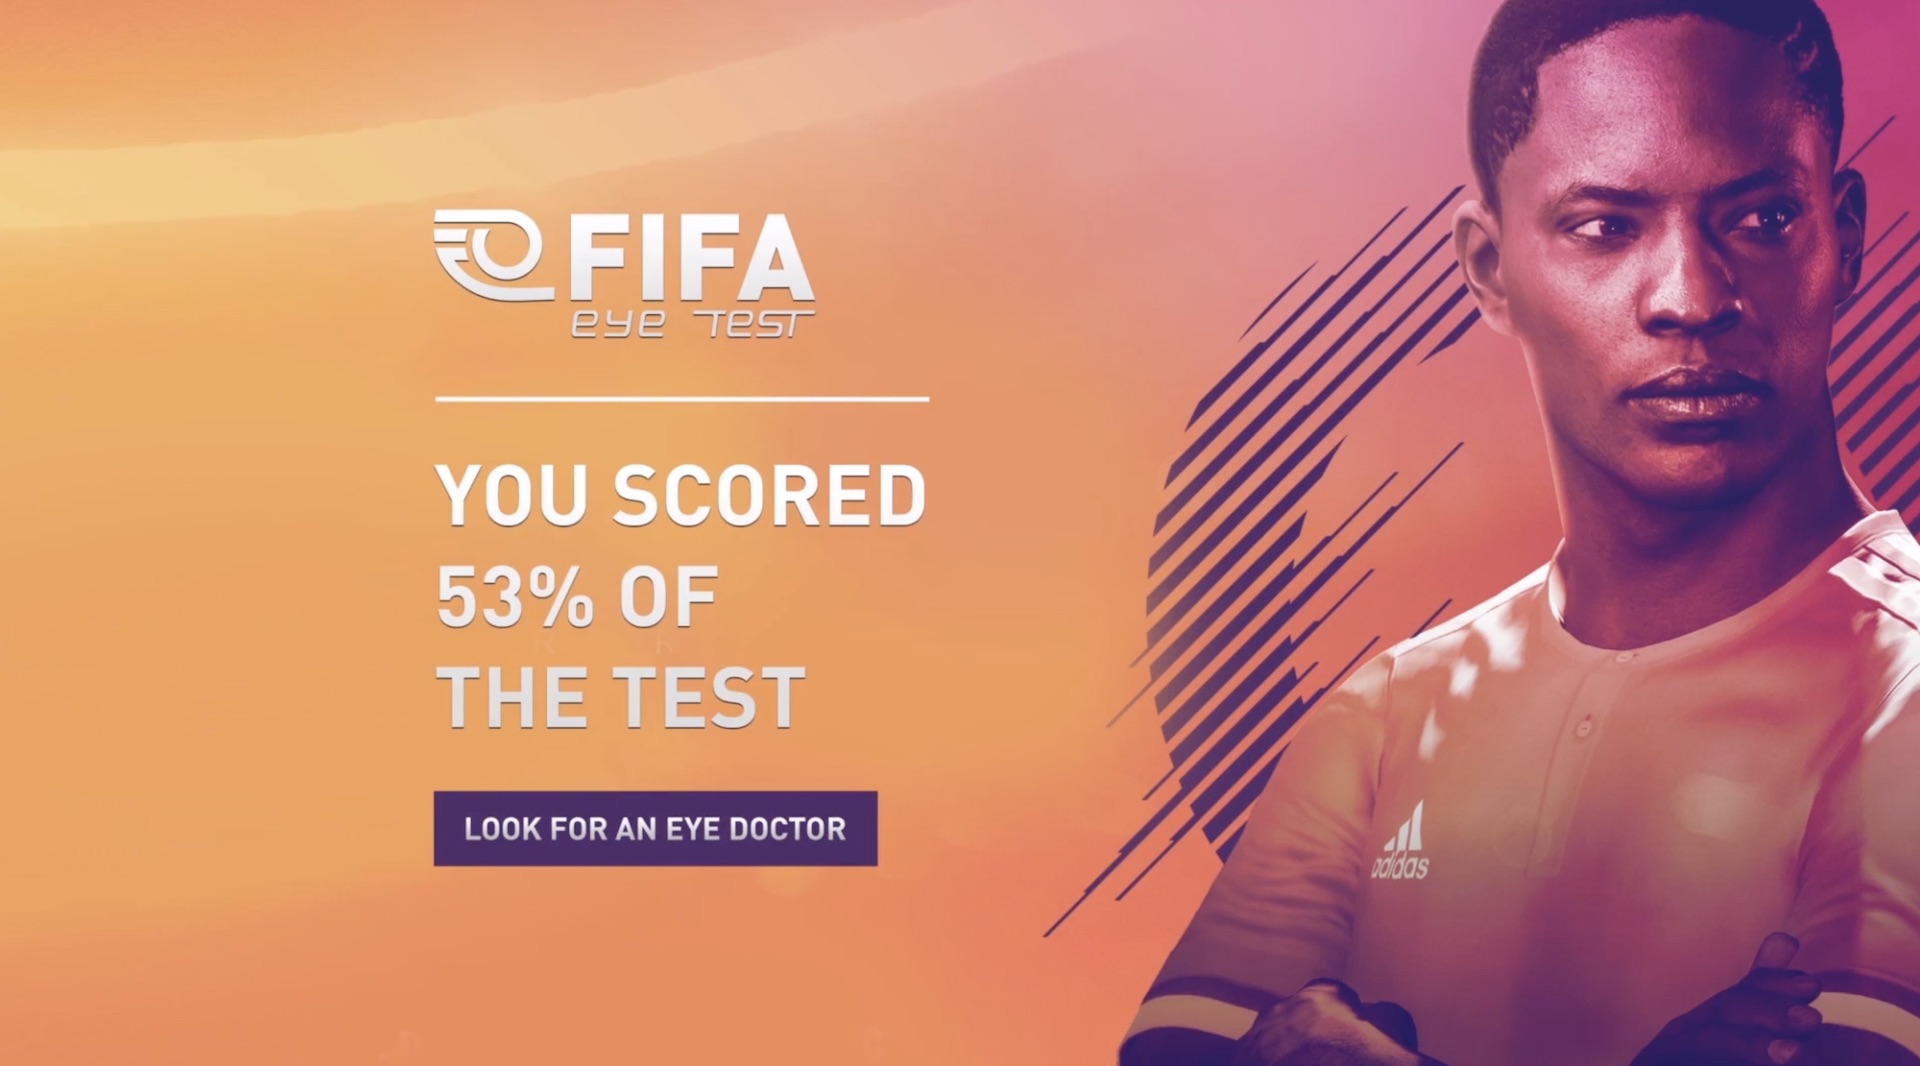 Vega Digital Awards Winner - FIFA Eye Test, 